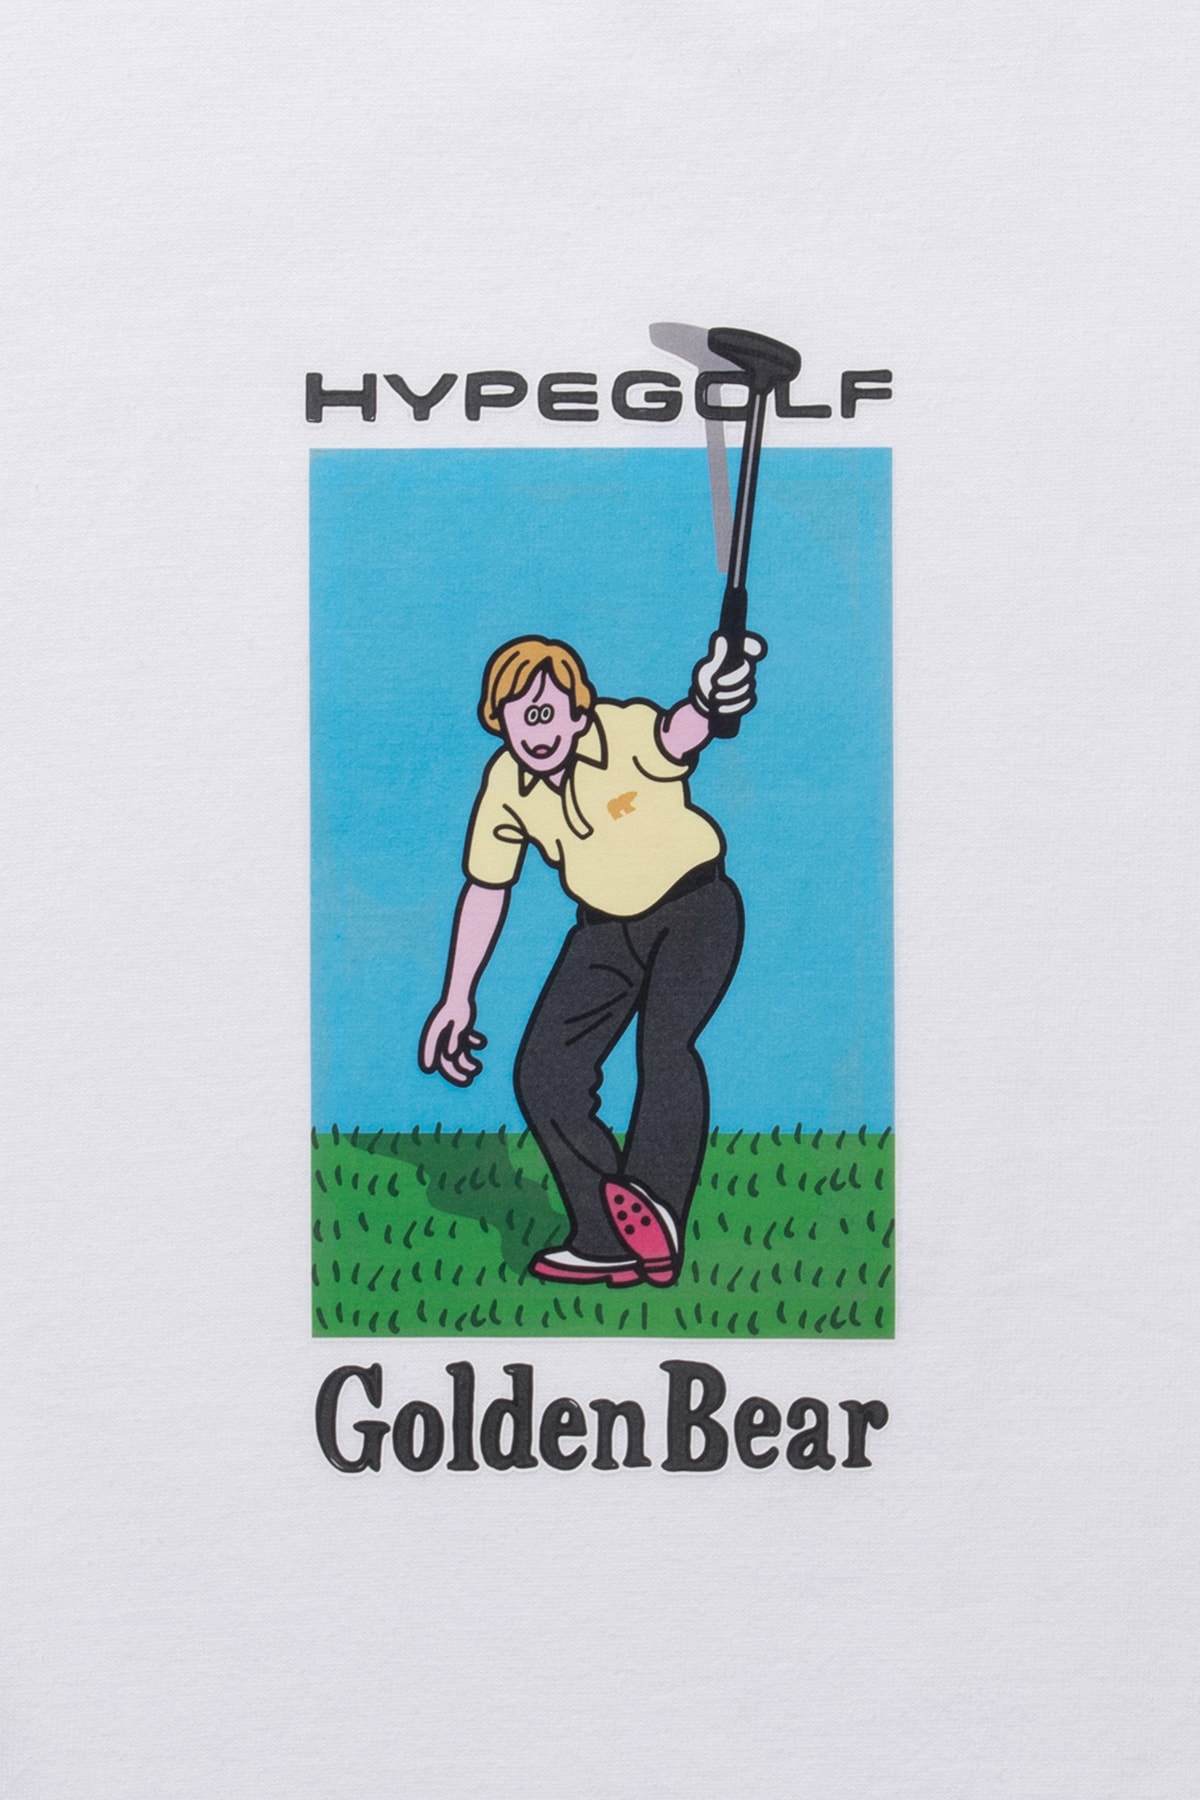 ハイプゴルフが アーティスト face oka と GB ゴルフと組んだスペシャルコラボレーションアイテムを発売